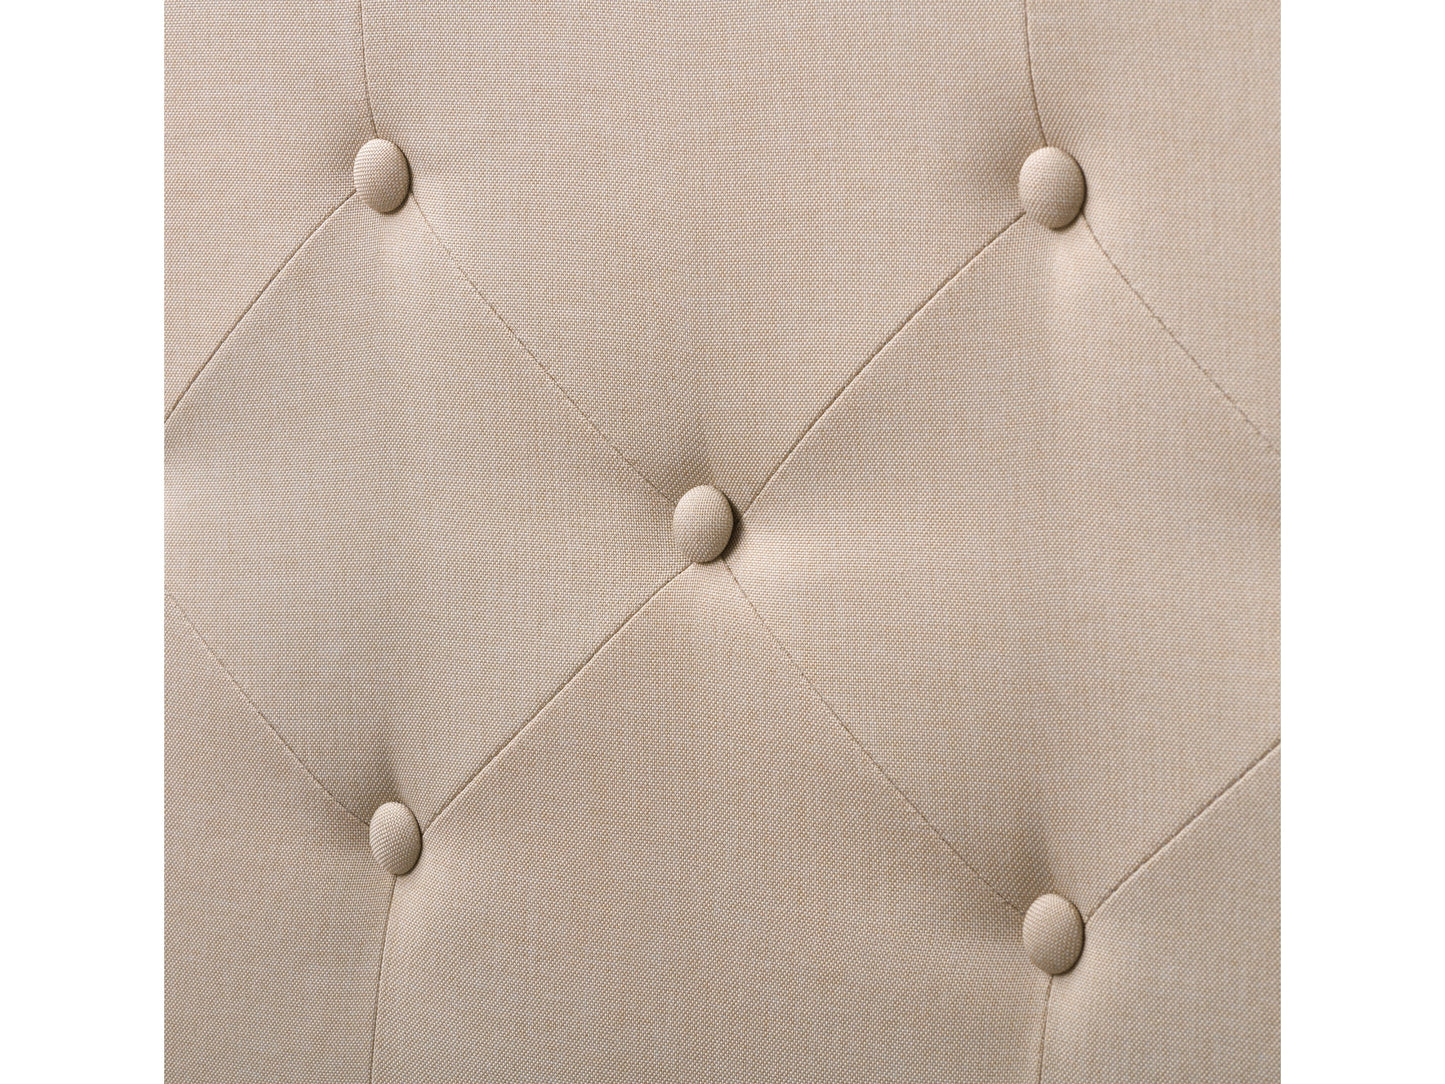 cream Button Tufted Queen Bed Nova Ridge Collection detail image by CorLiving#color_nova-ridge-cream